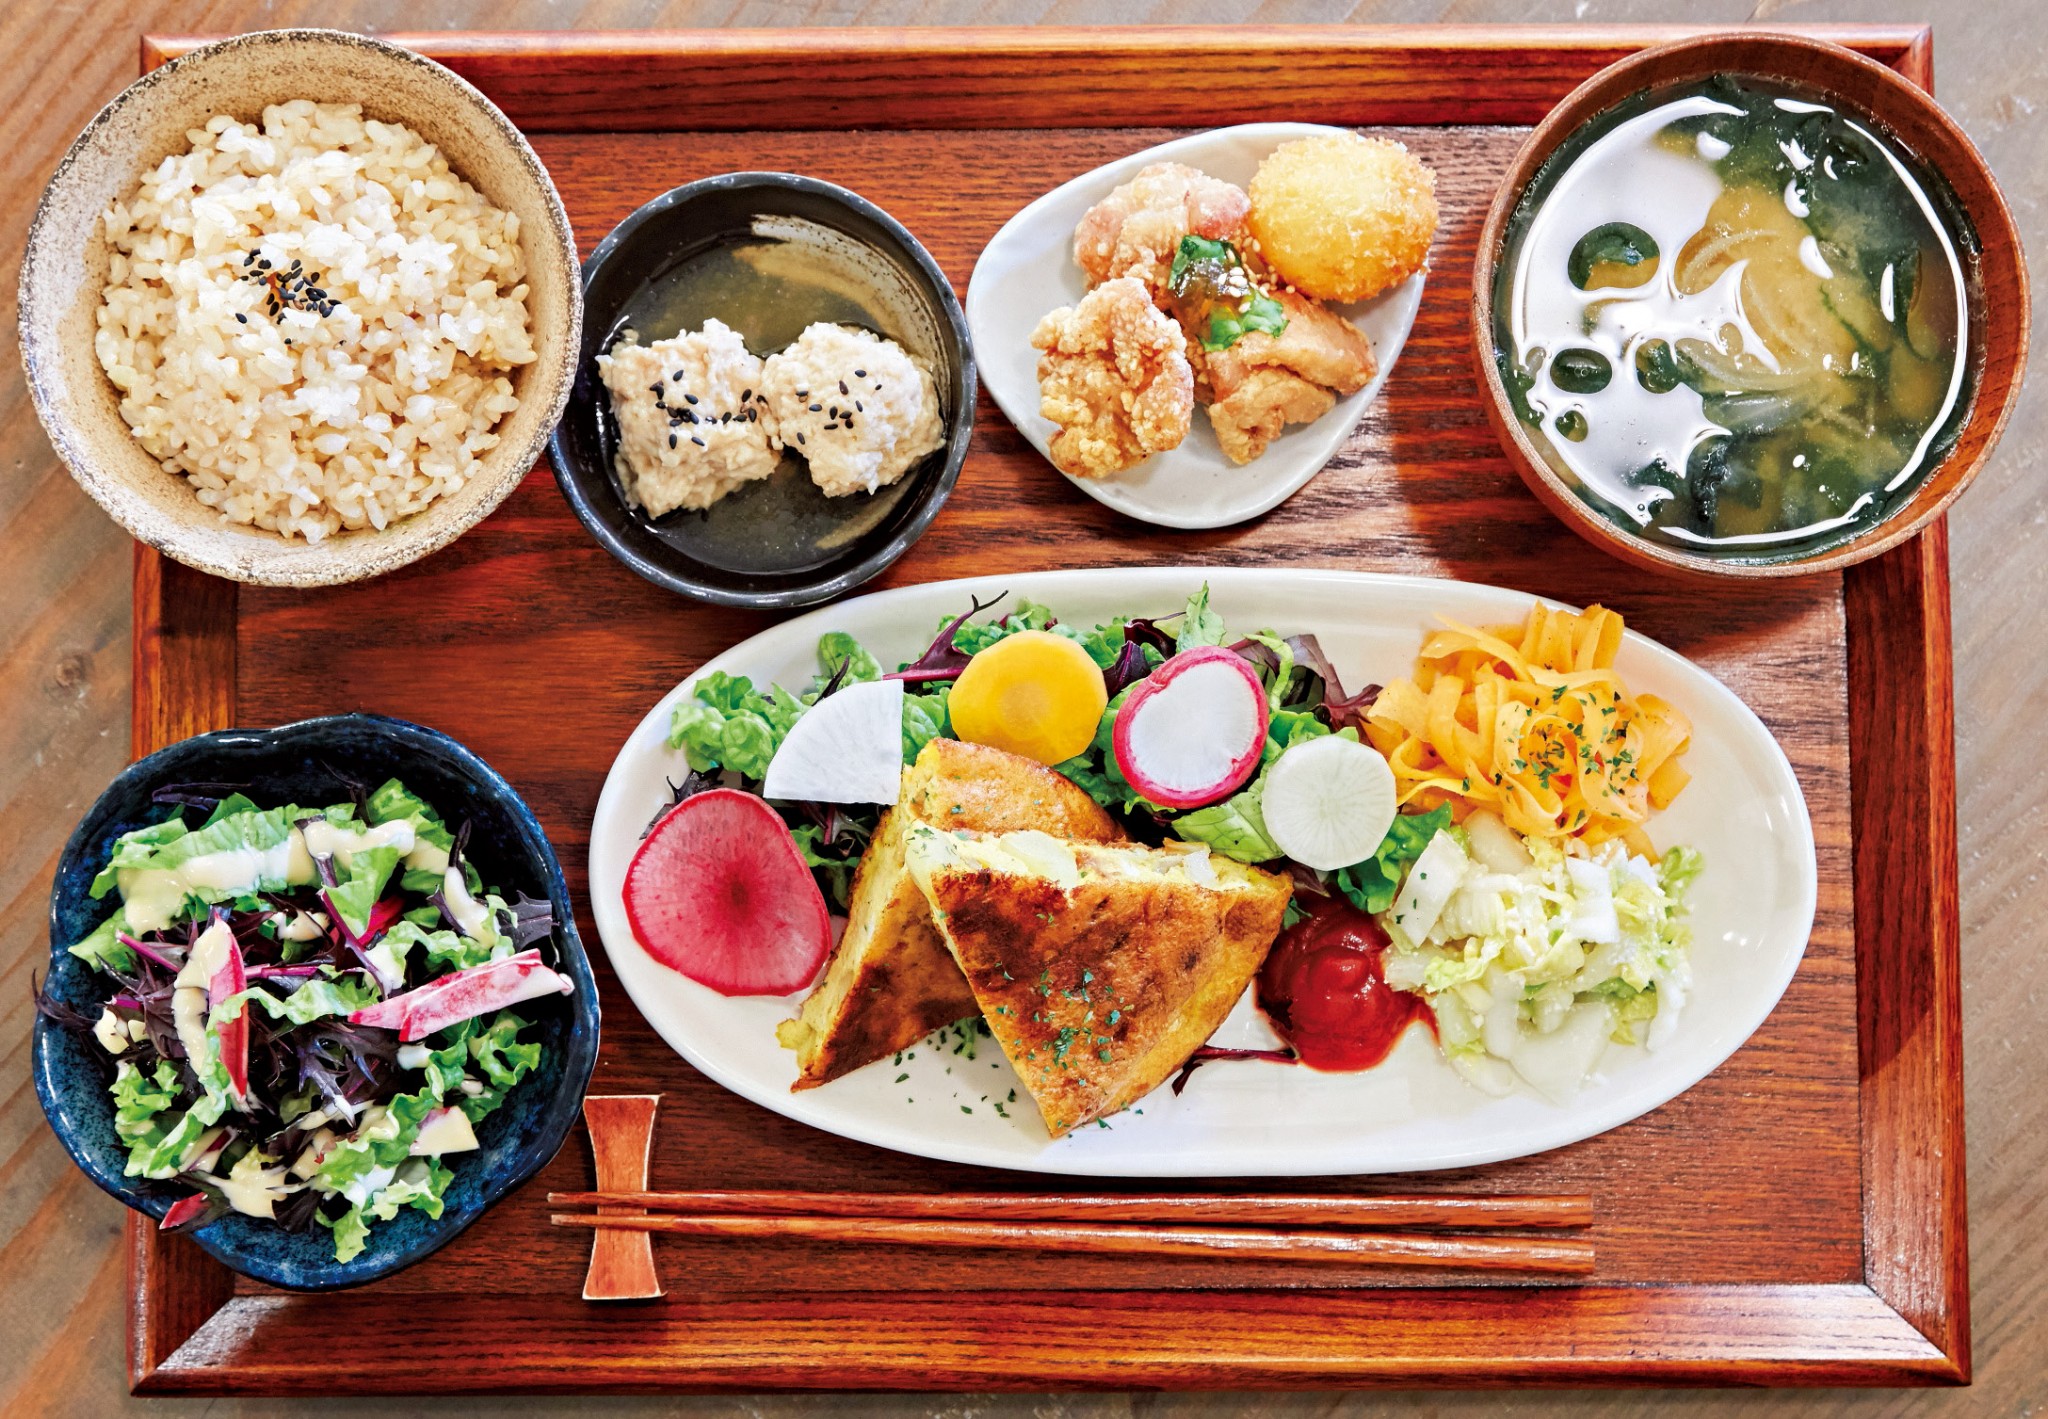 オーガニックレストラン カフェのおすすめメニュー3選 健康志向な休日を過ごすなら 吉祥寺へ Food Hanako Tokyo